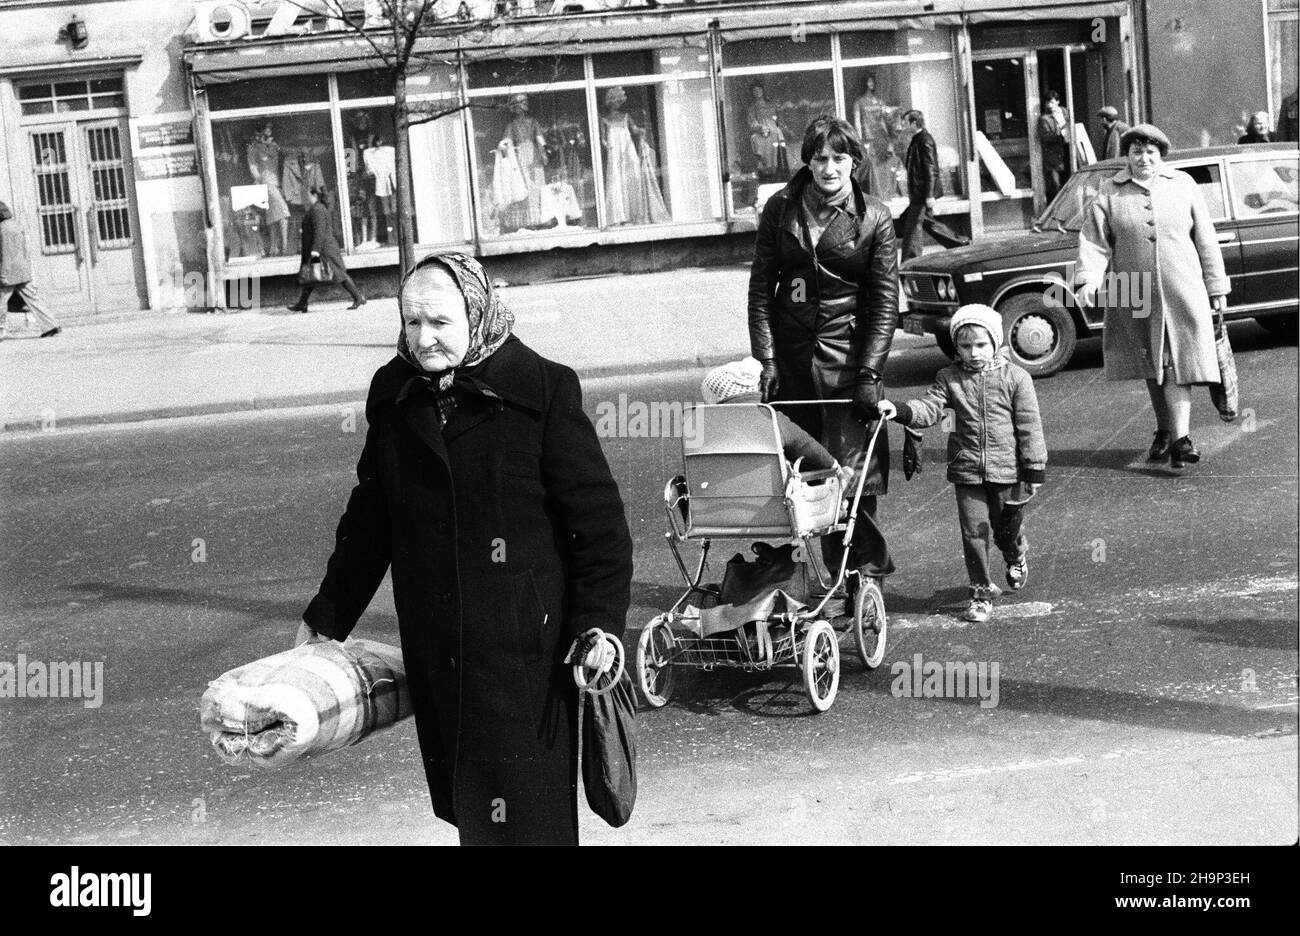 Gdañsk, 1981-04-02. Ludzie na ulicy. jb  PAP/CAF/Stefan Kraszewski      Gdansk, April 2, 1981. People in the street.  jb  PAP/CAF/Stefan Kraszewski Stock Photo